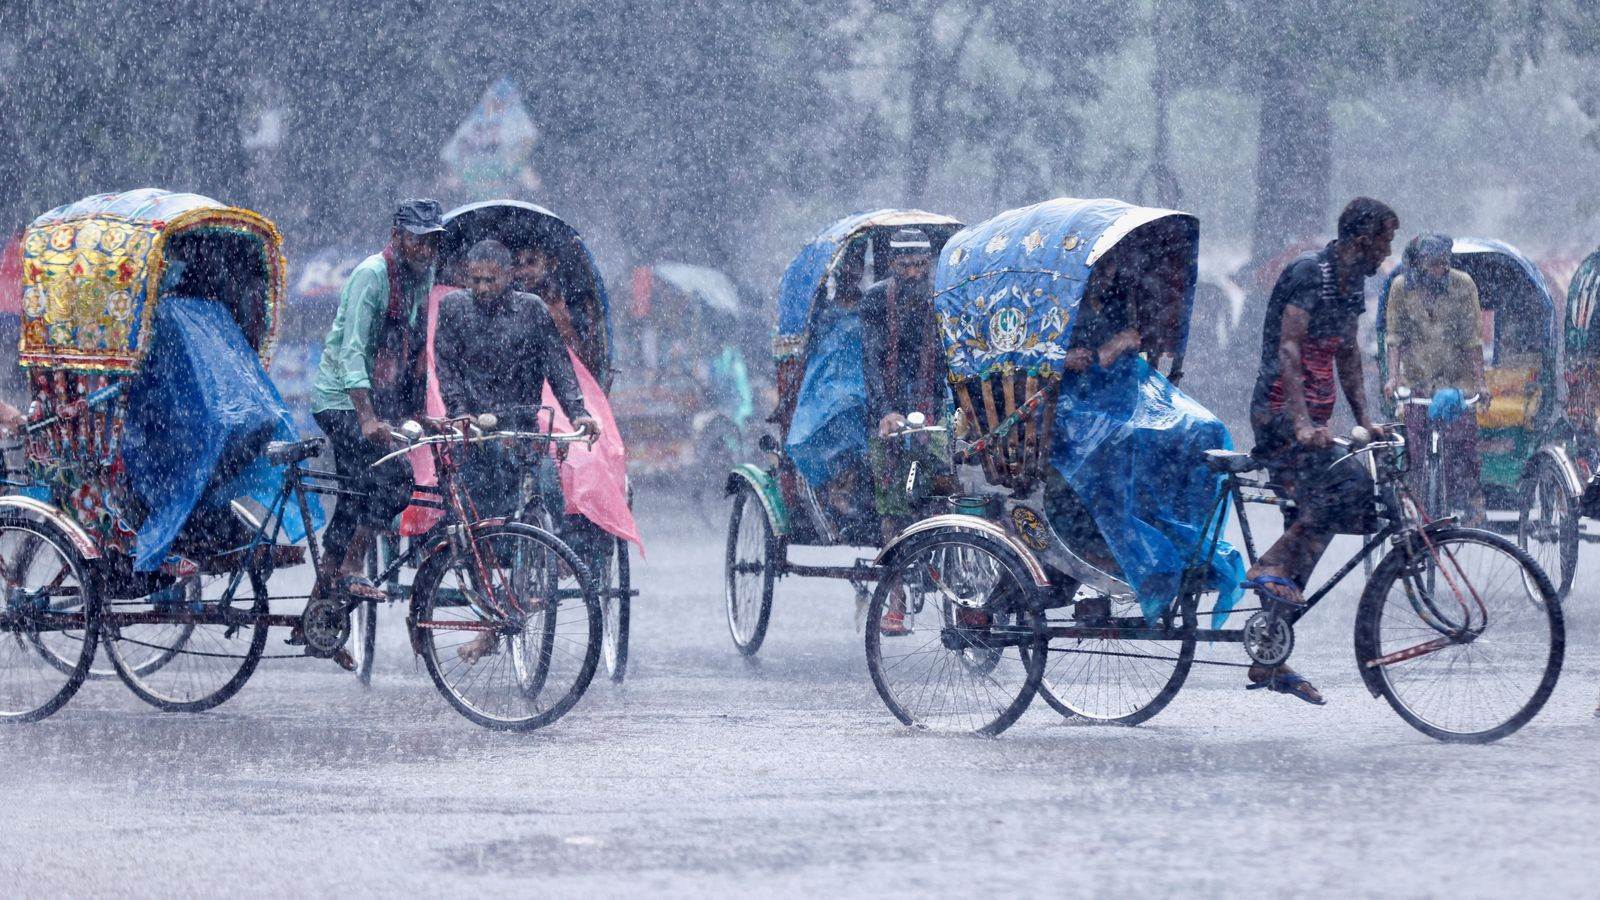 سائقو عربات الريكاشة خلال هطول أمطار غزيرة على العاصمة دكا